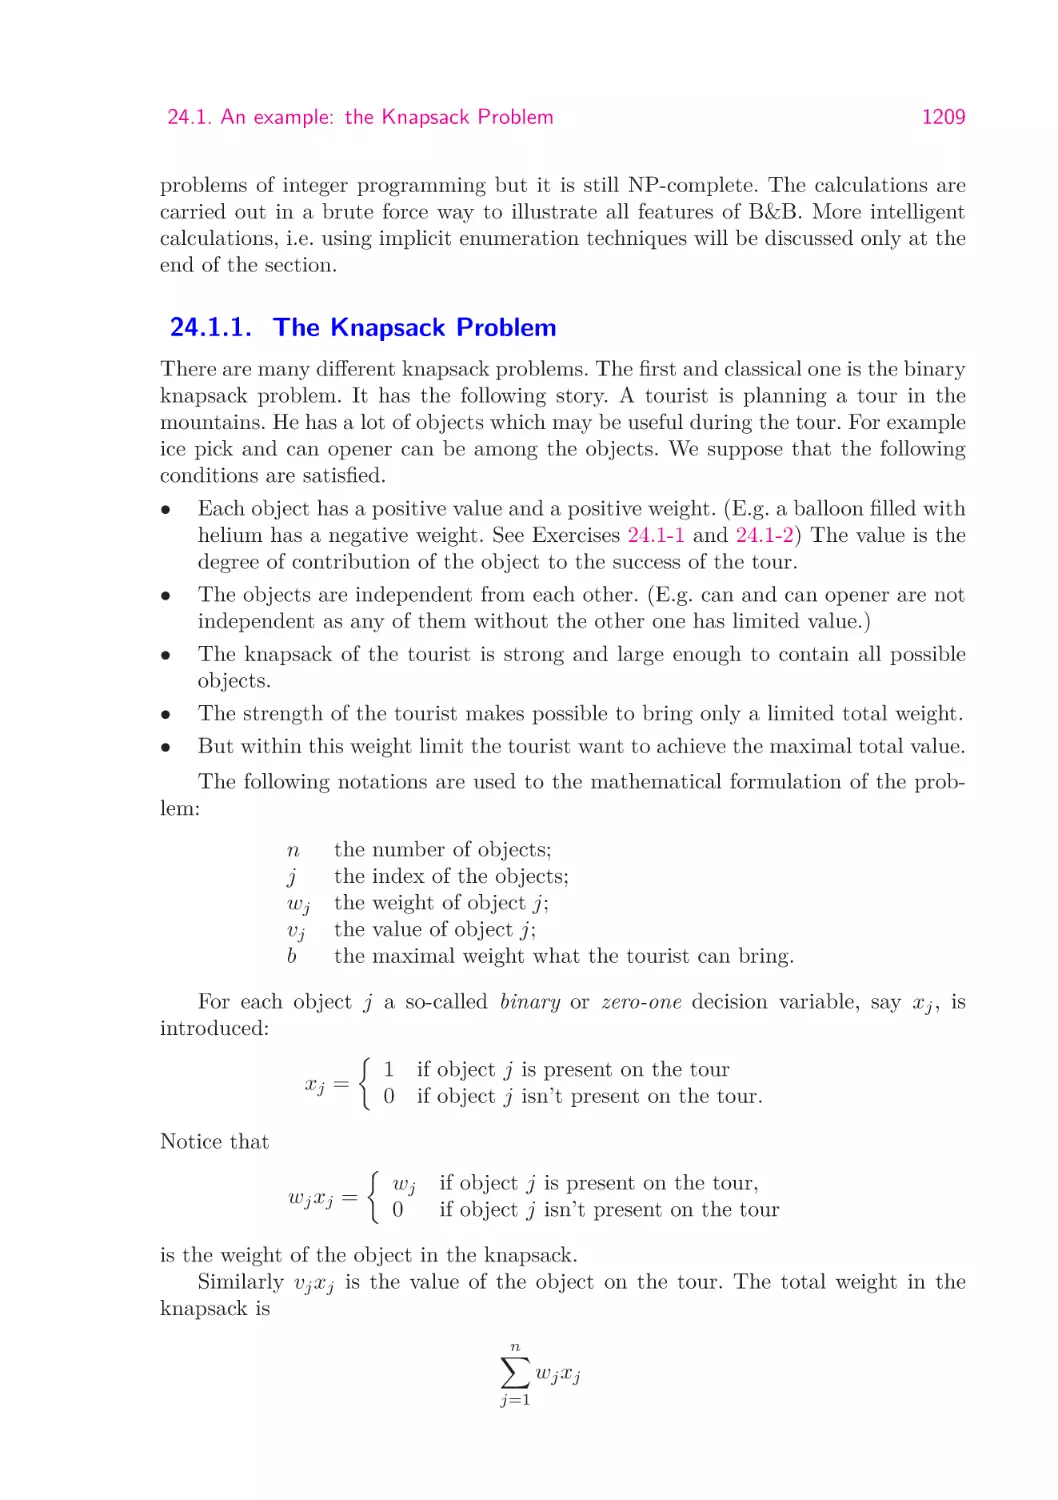 24.1.1.  The Knapsack Problem